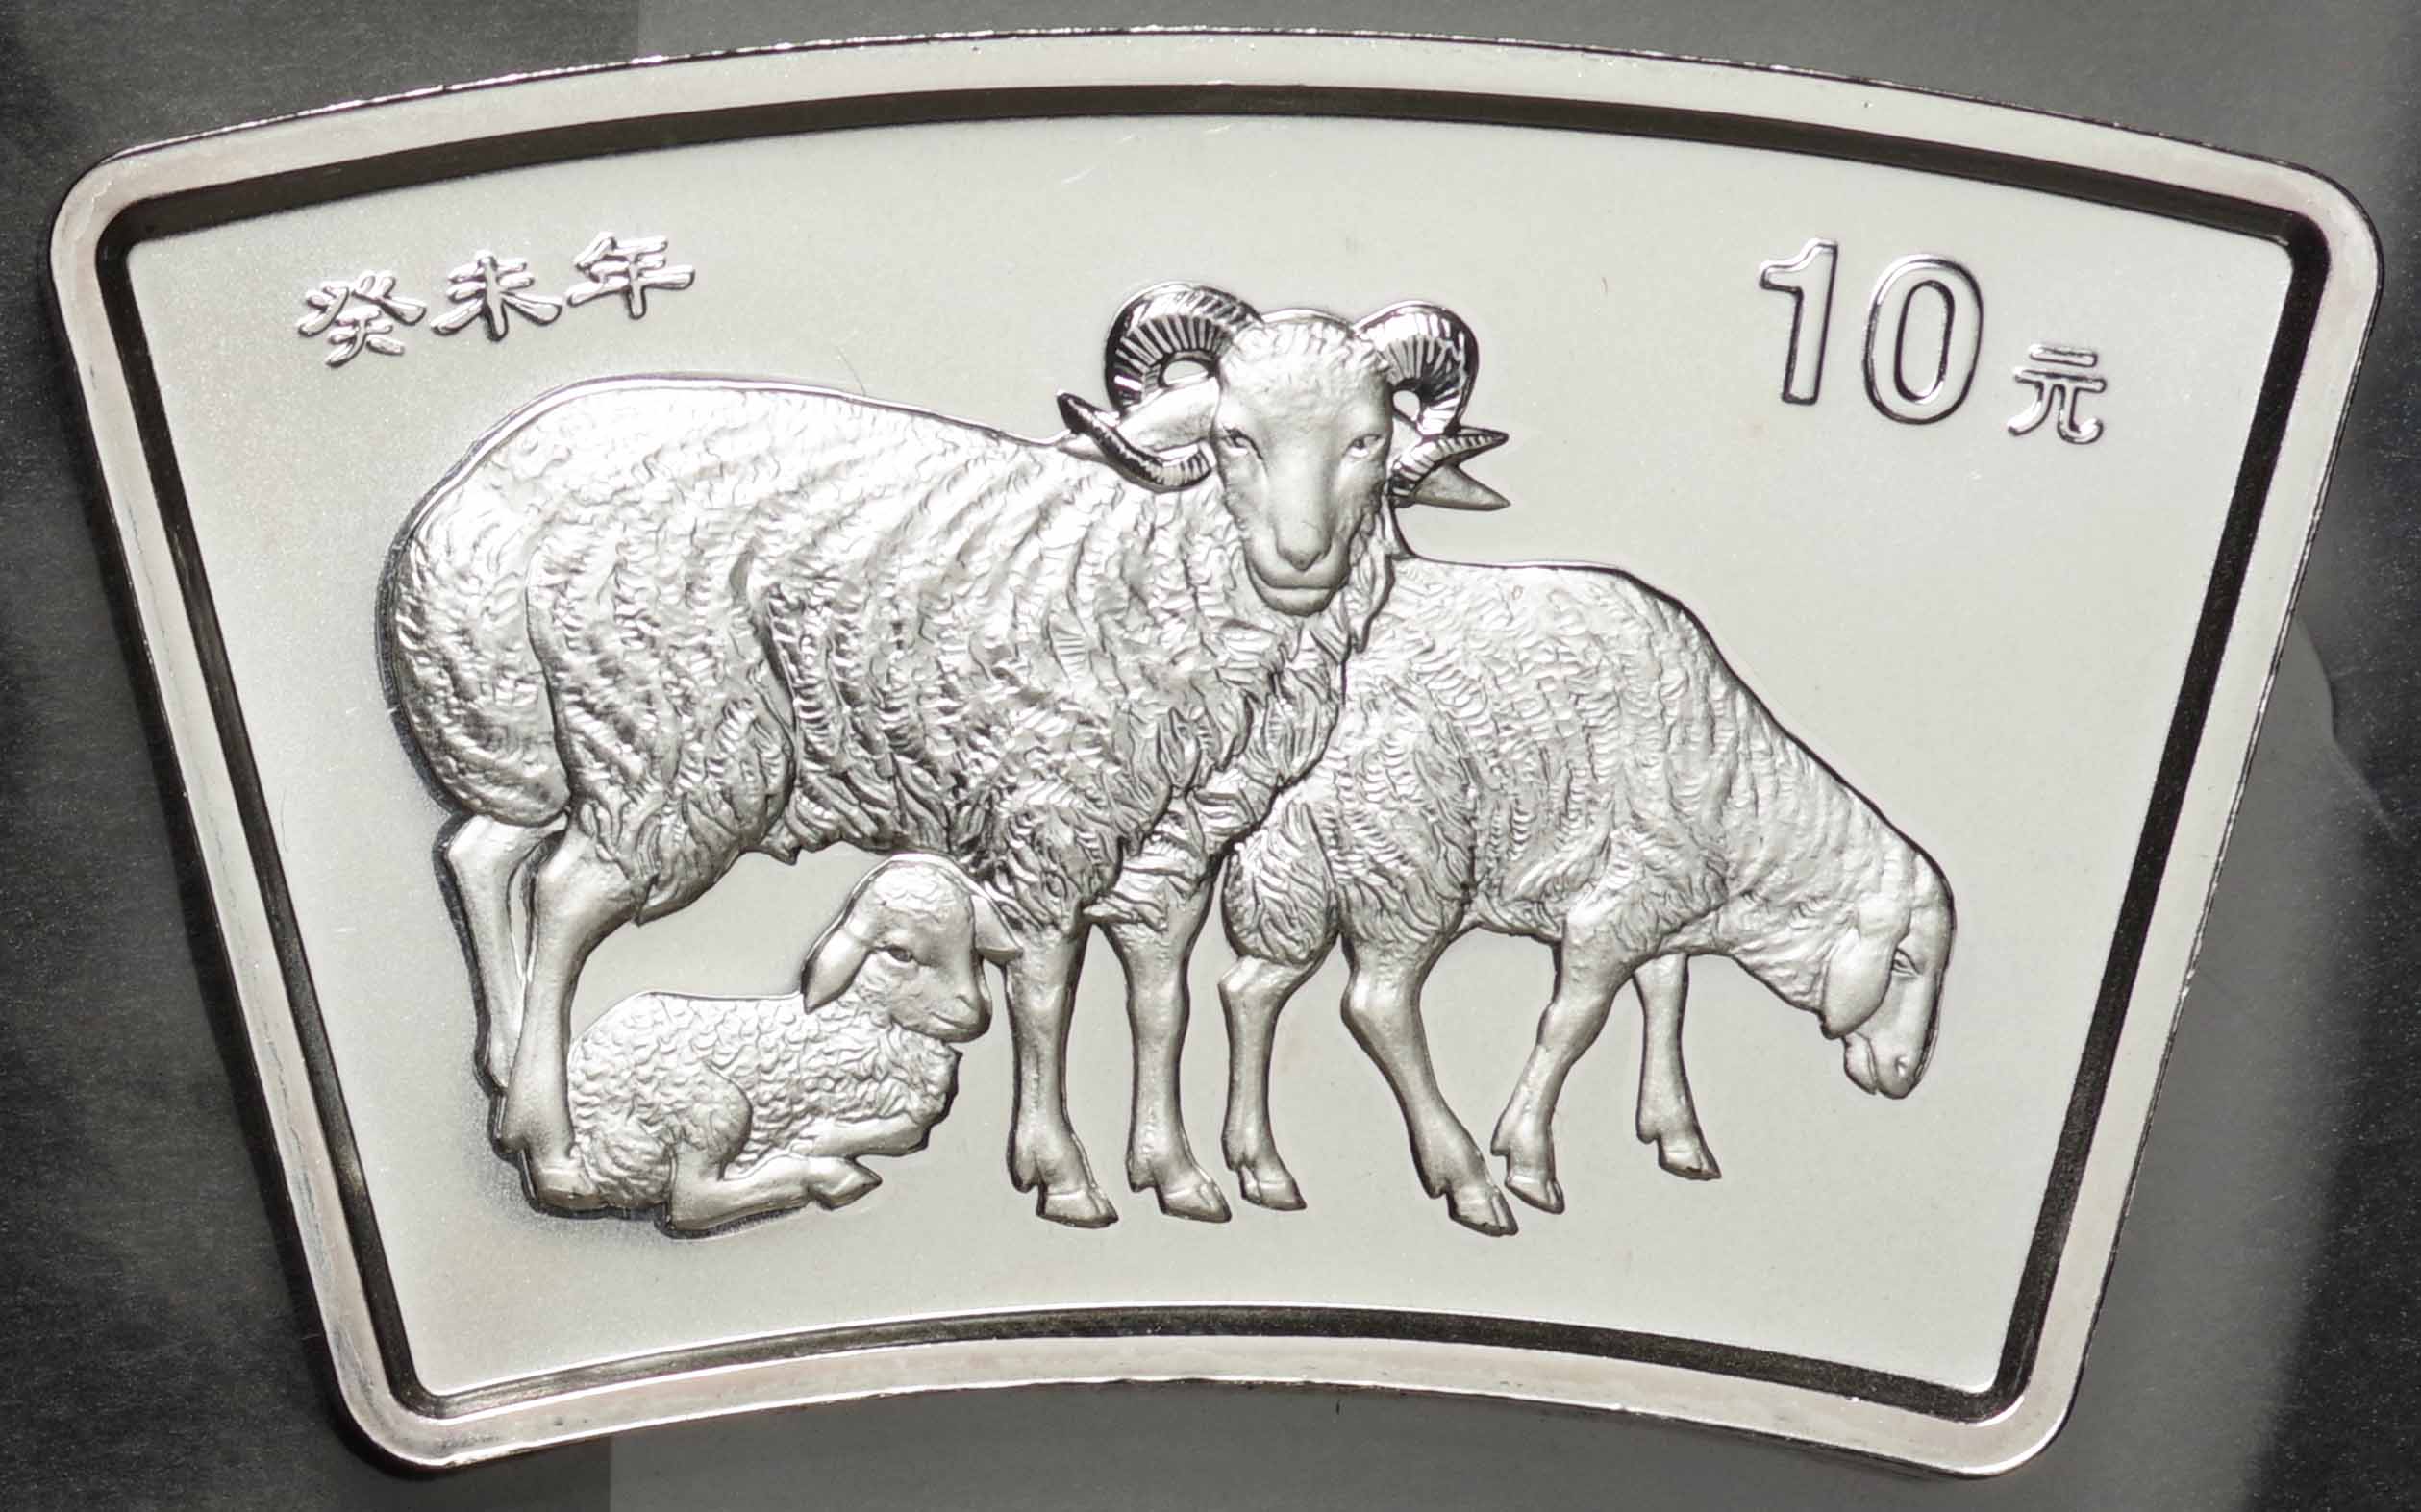 中国-PRC. 未使用. UNC. 十二支干支動物 未年羊図 10元(扇形)銀貨 